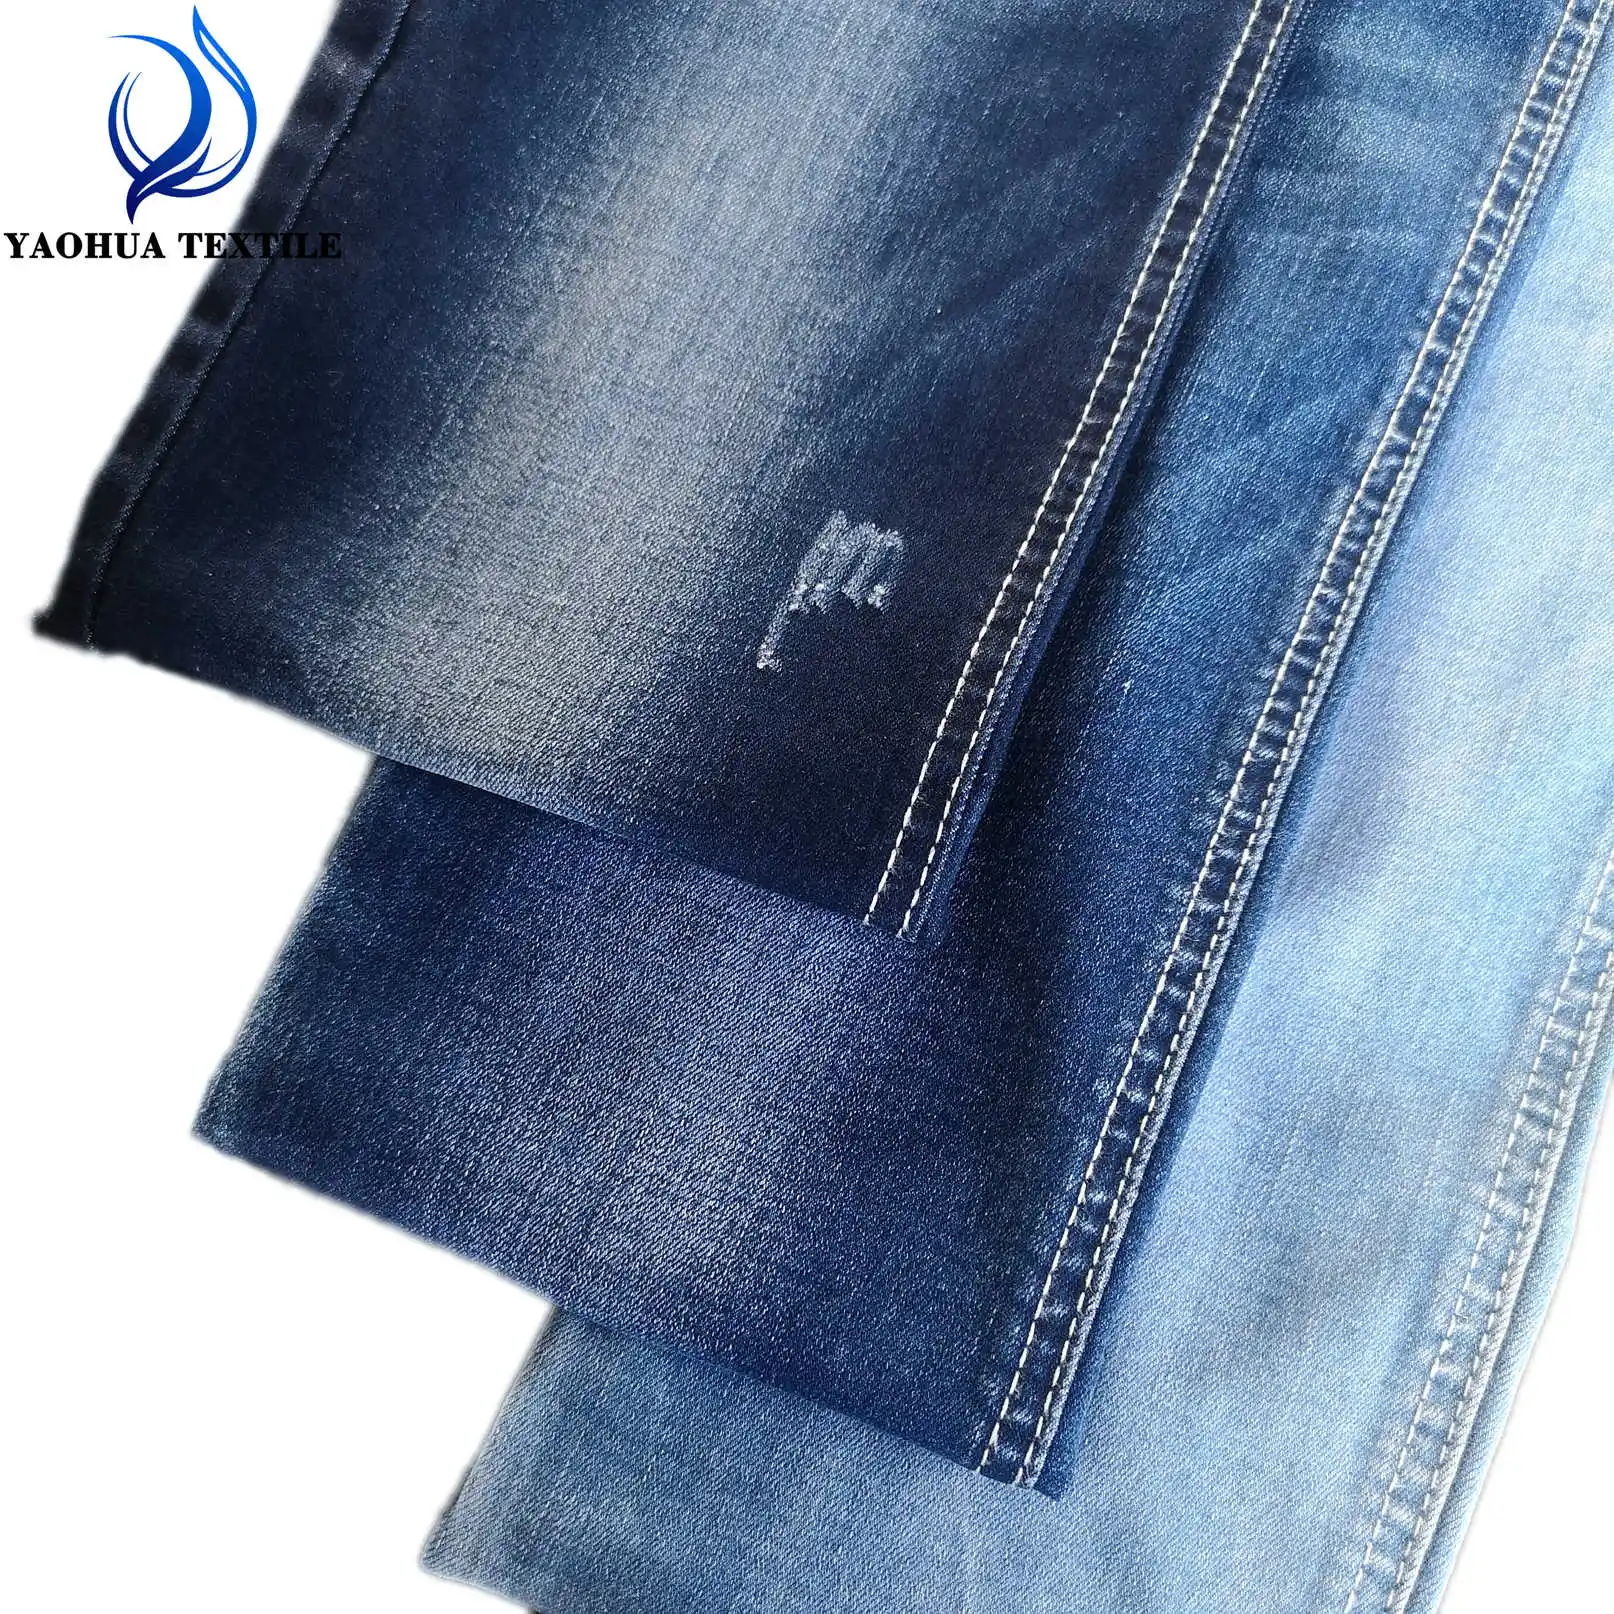 CK068 Flammé TR filage à anneaux faible élasticité léger et extensible coton polyester lycra denim jeans tissu